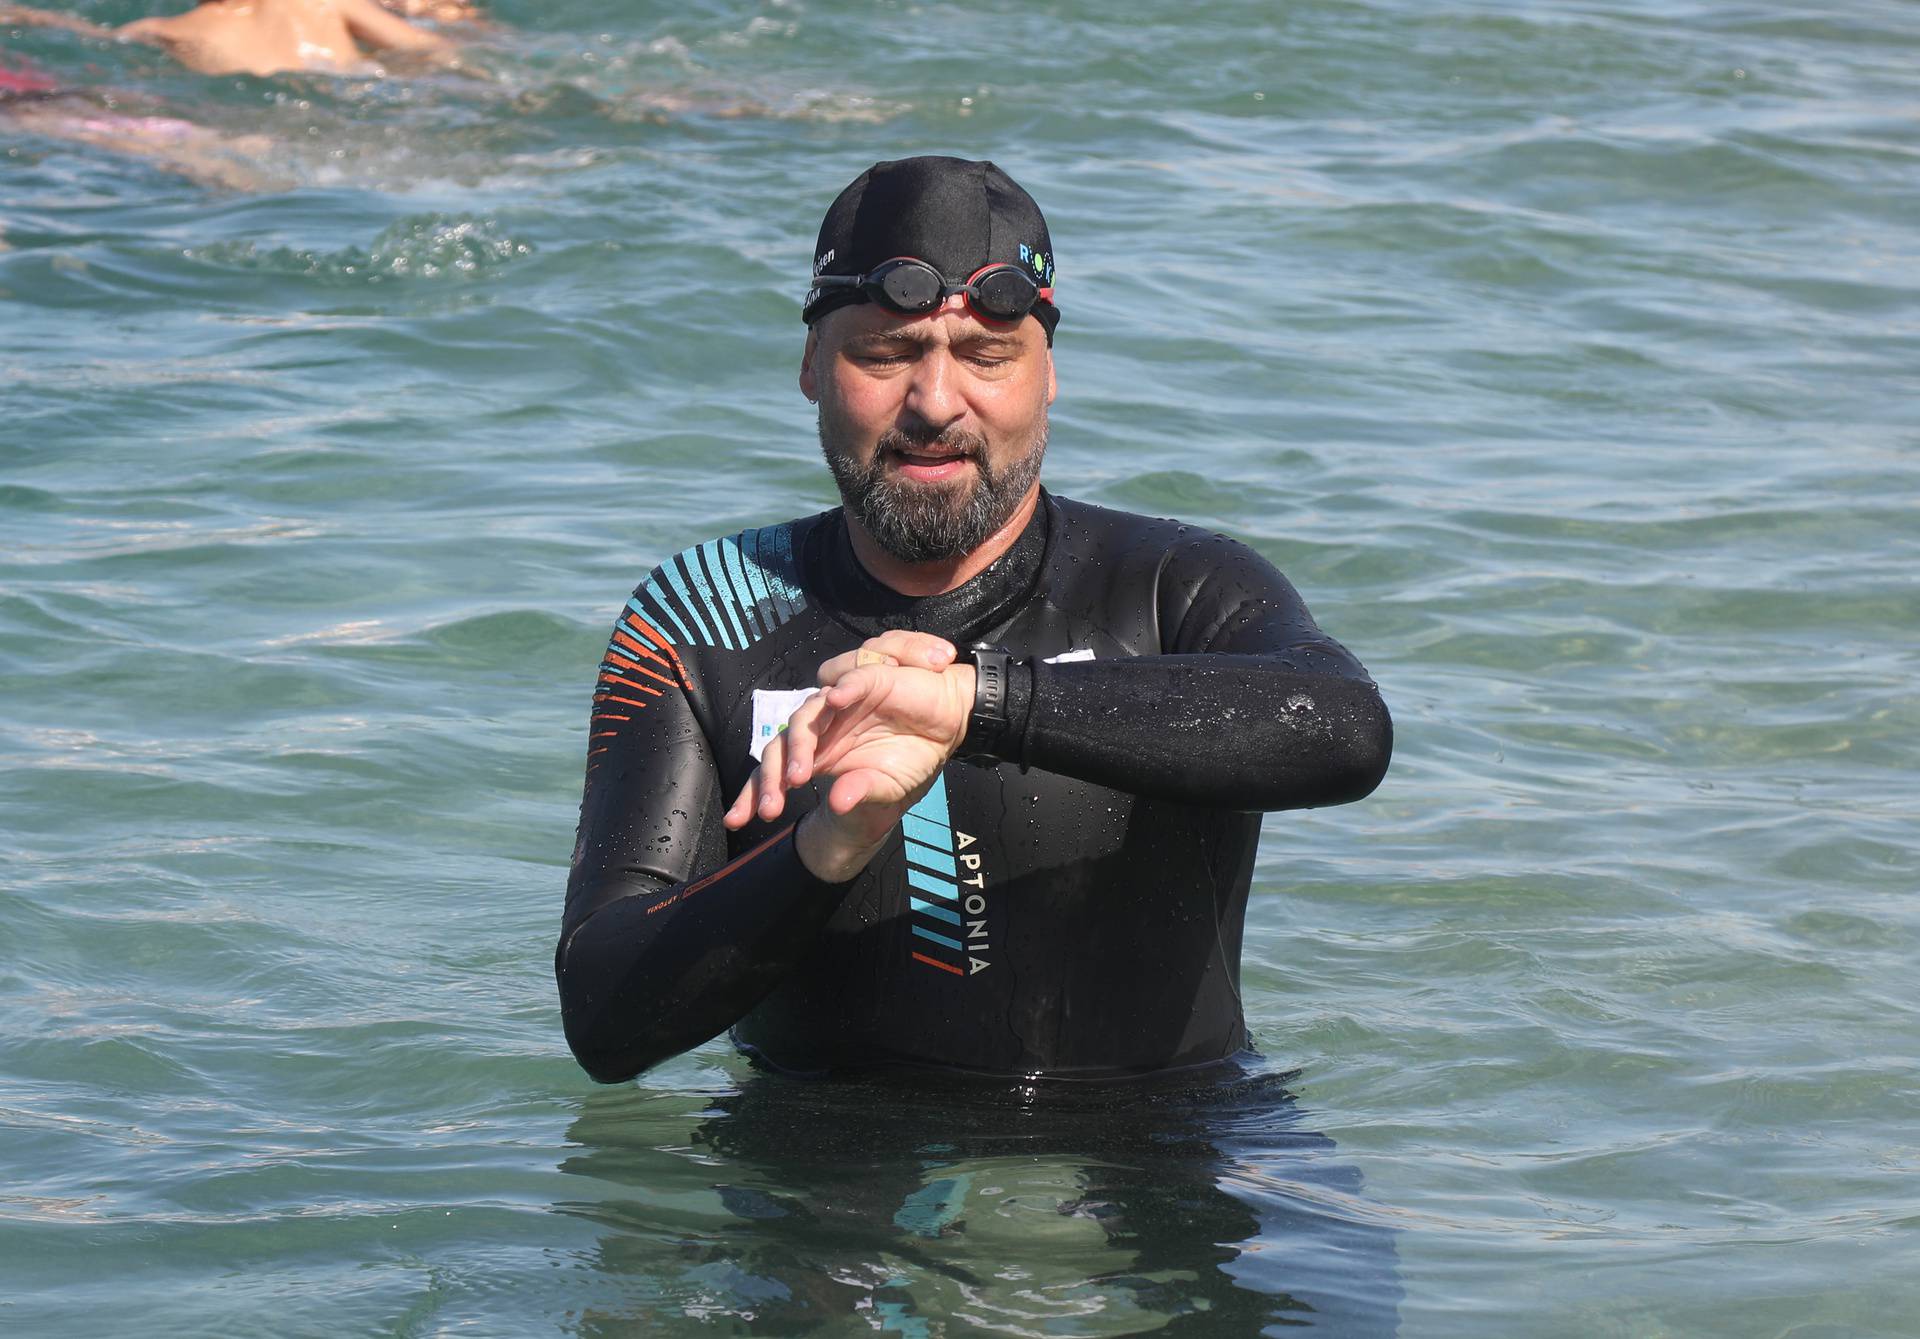 Skokom u more sa šibenske Brodarice Domagoj Jakopović Ribafish započeo je drugu etapu projekta RokOtok